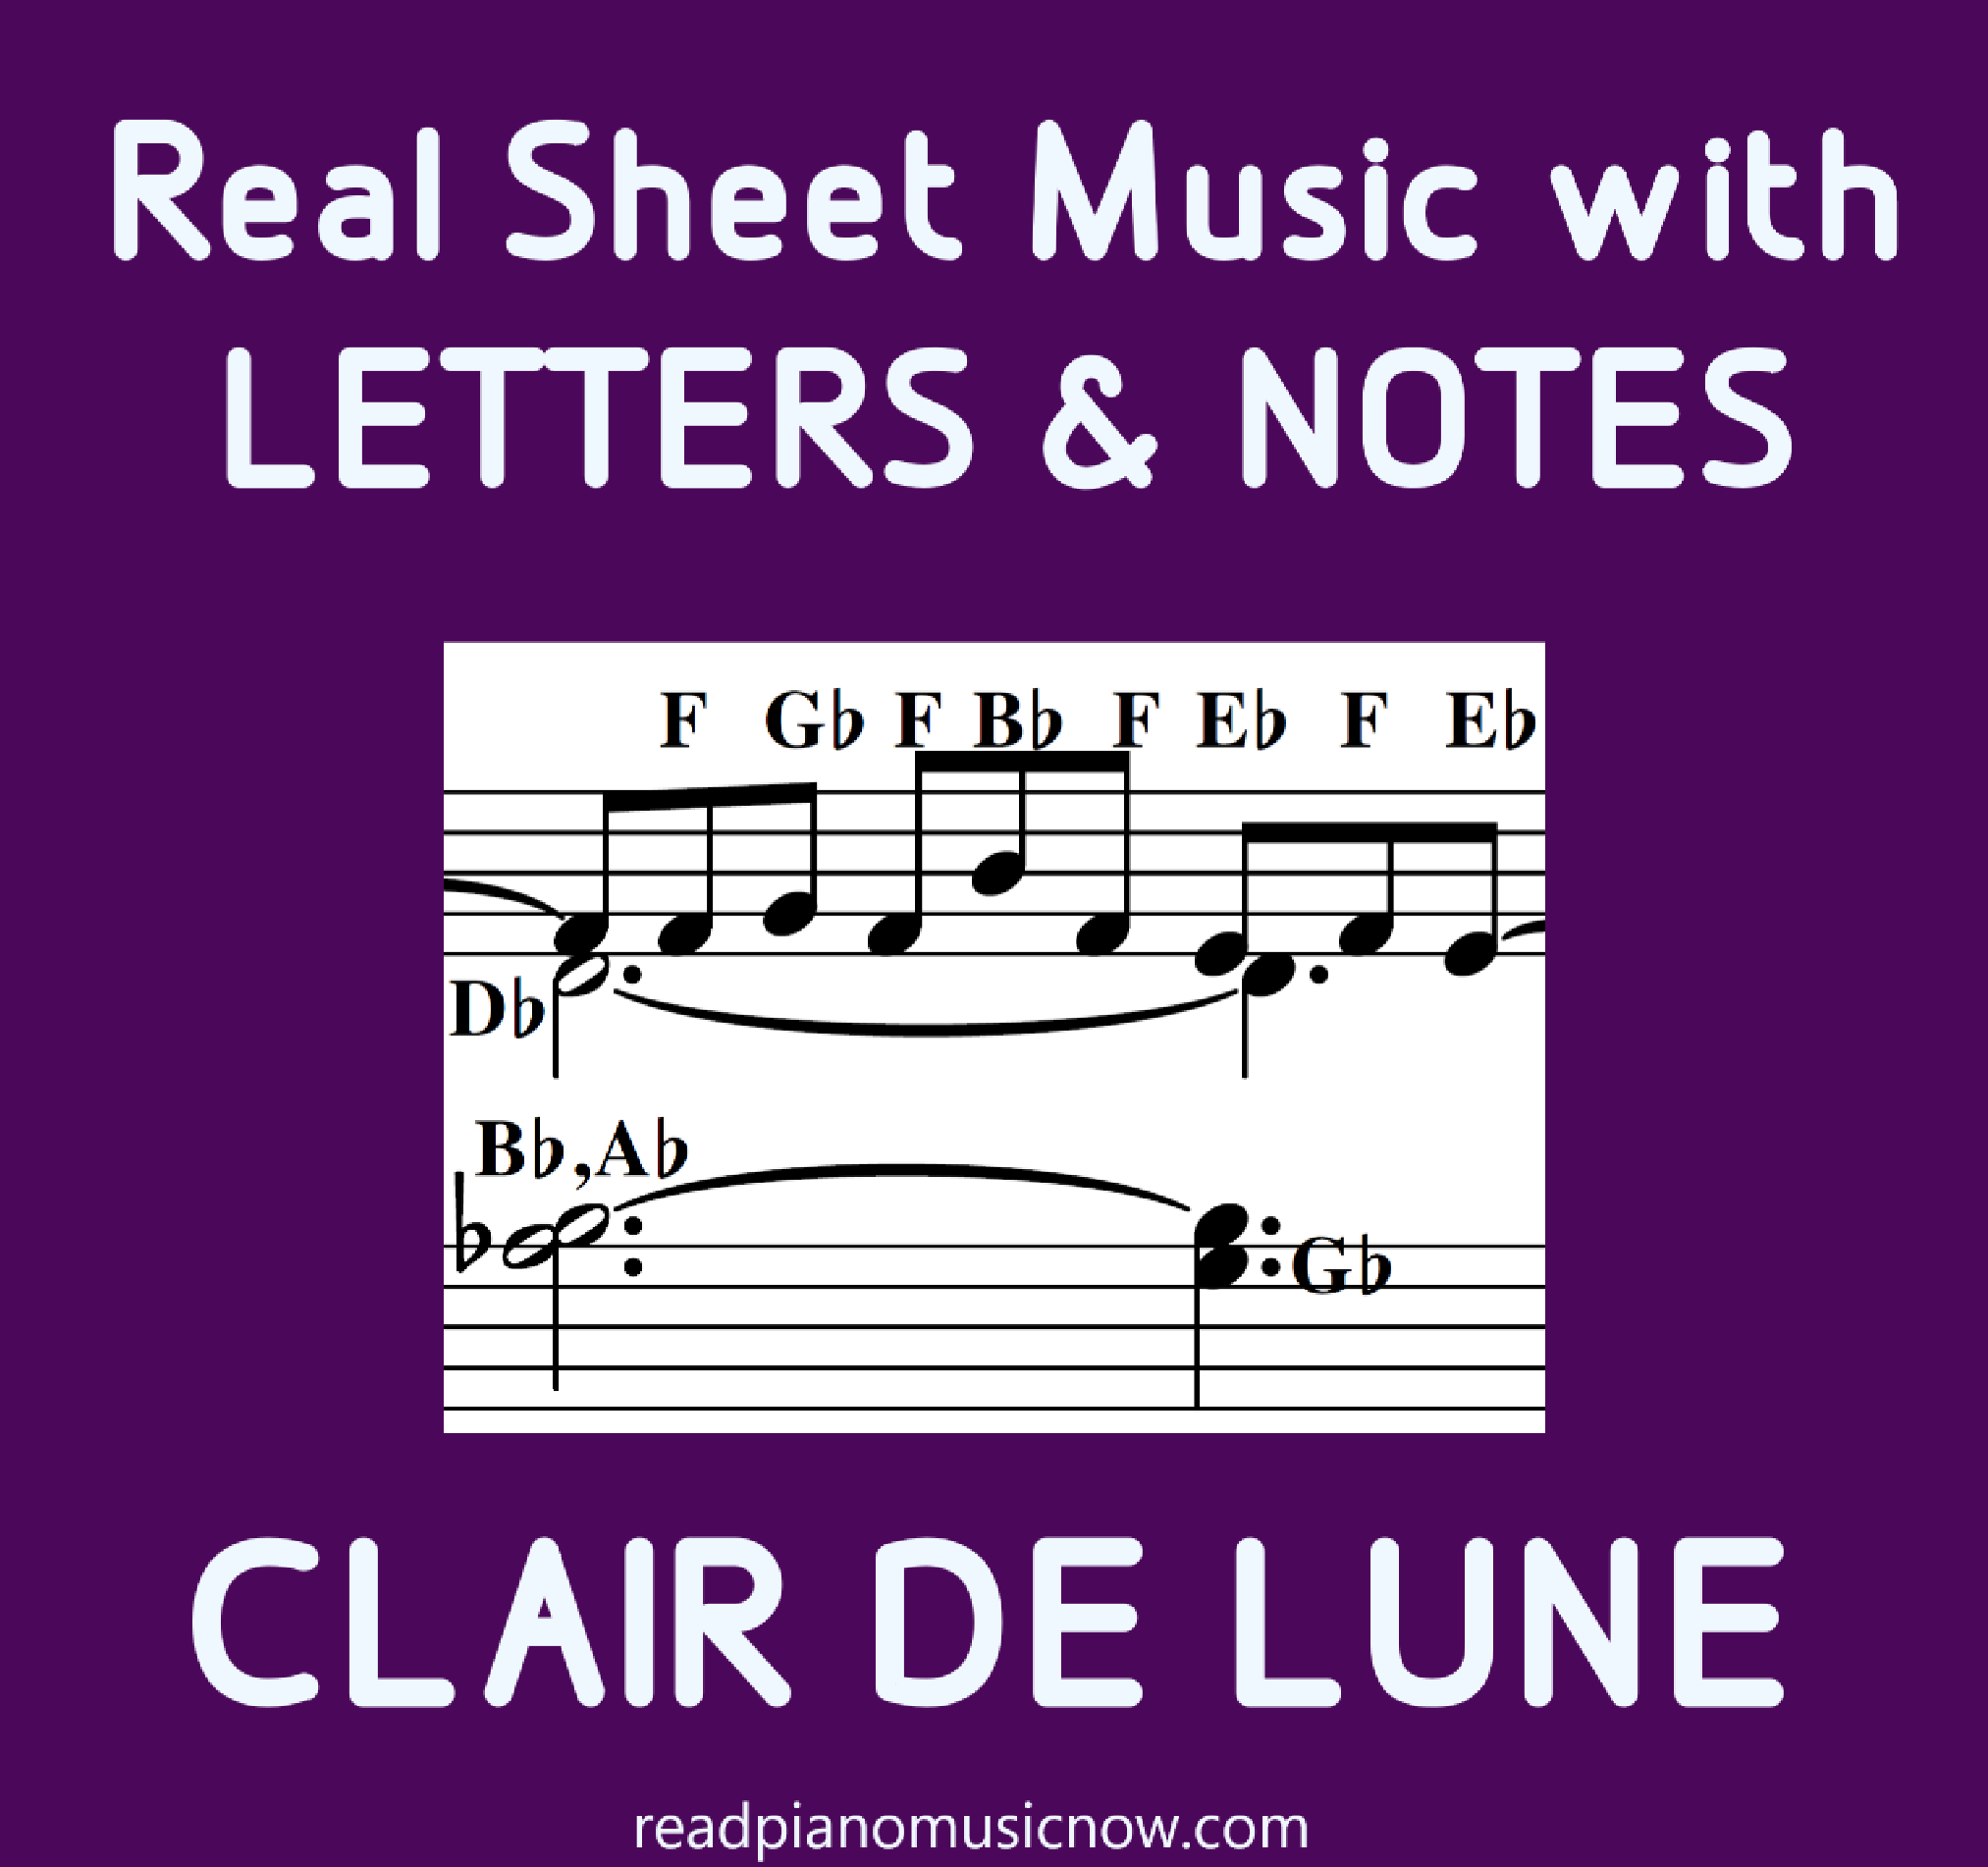 Clair de Lune үсэг бүхий хуудас хөгжим - бүтээгдэхүүний зураг.